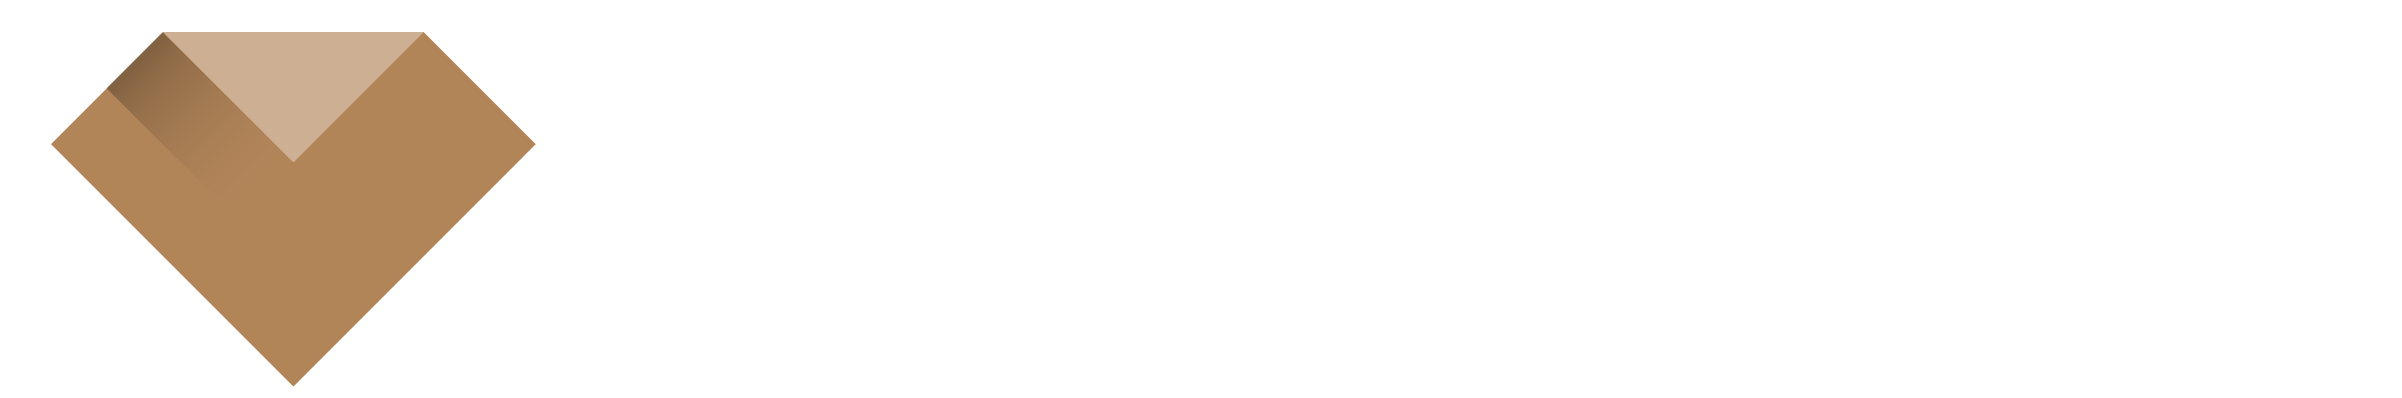 INTAX - Kancelaria podatkowa